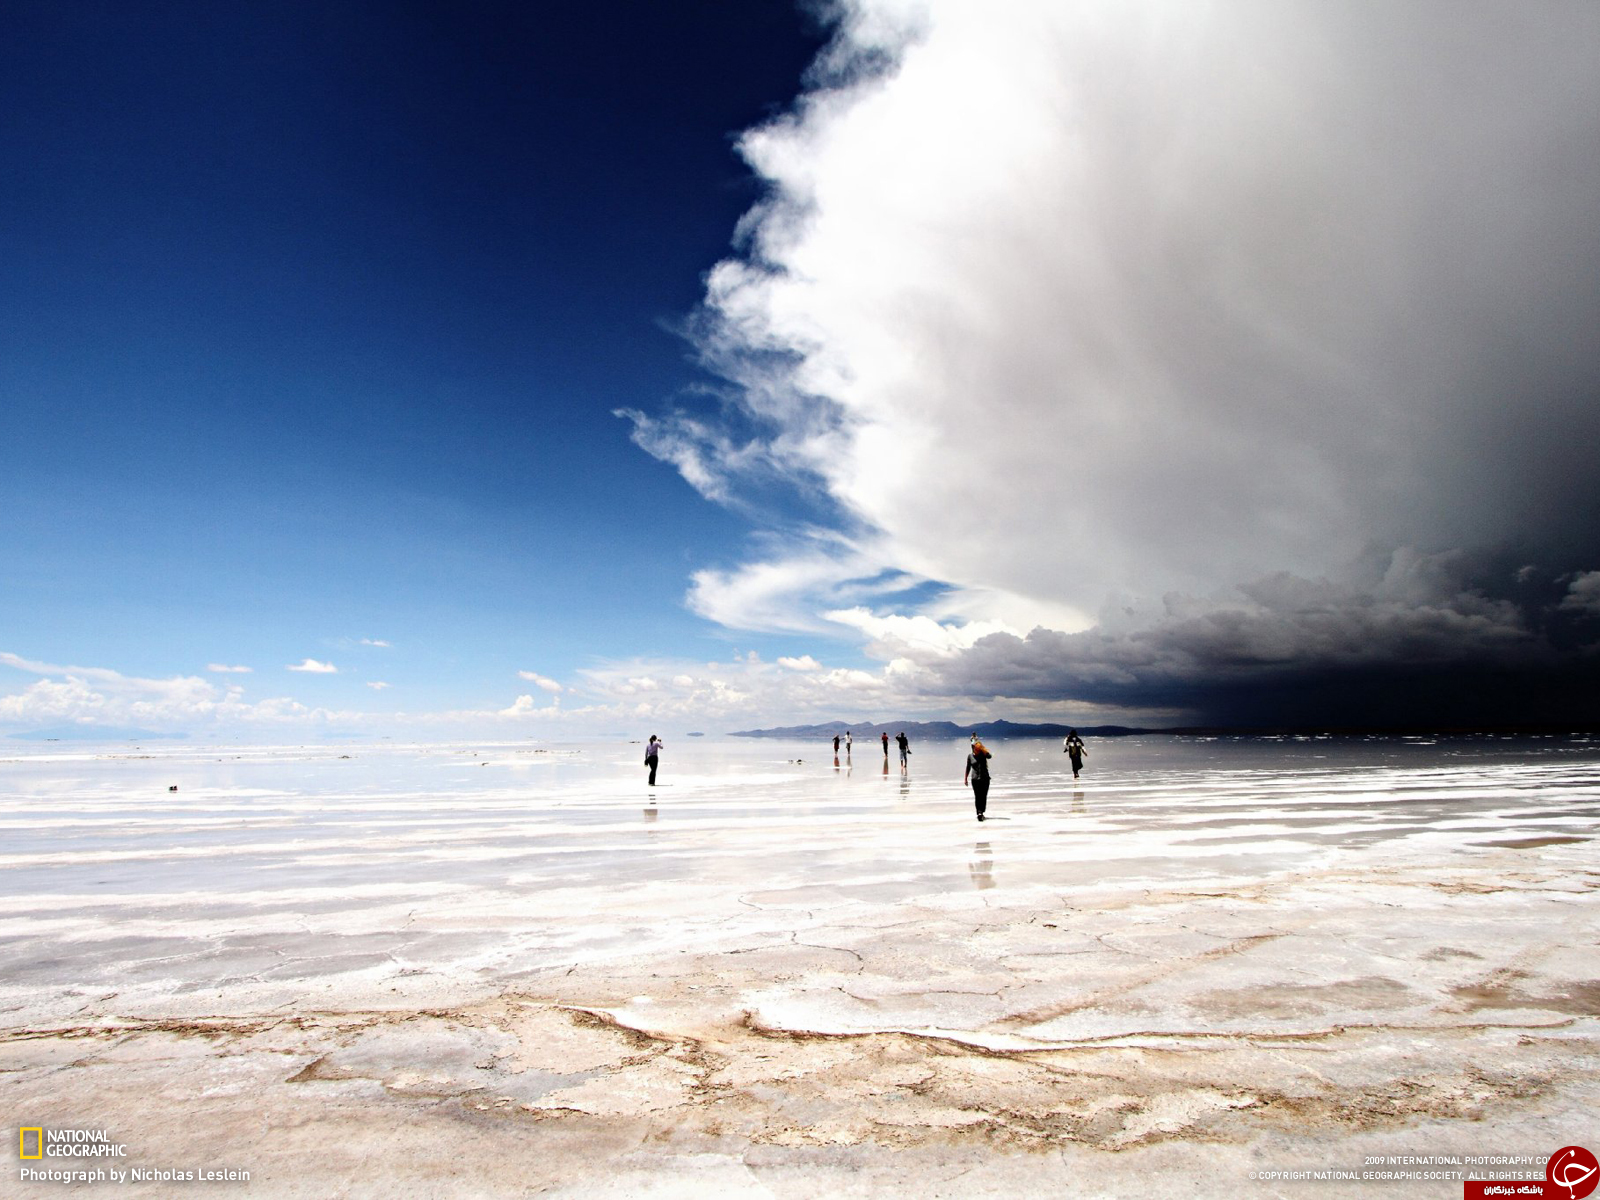 تصاویری دیدنی از بزرگ‌ترین و شگفت انگیزترین آینه طبیعی جهان در بولیوی